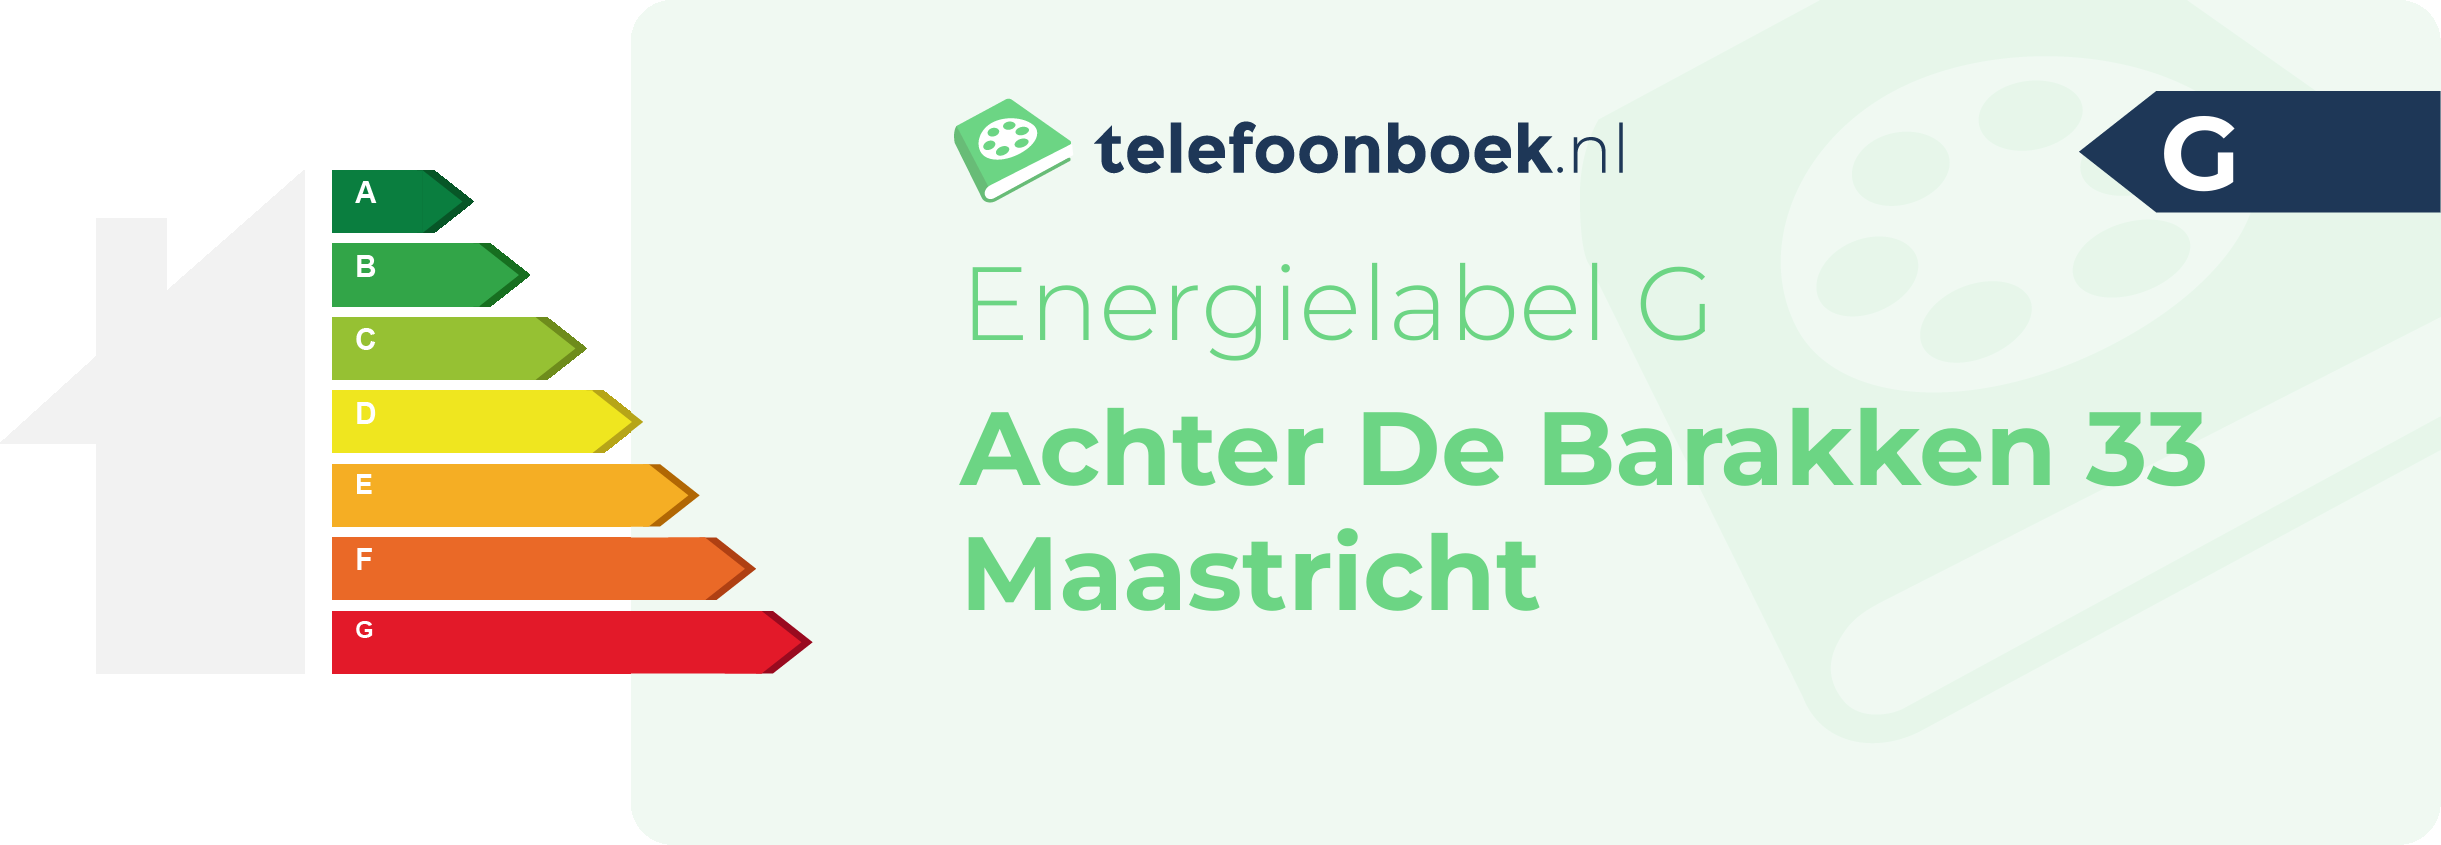 Energielabel Achter De Barakken 33 Maastricht